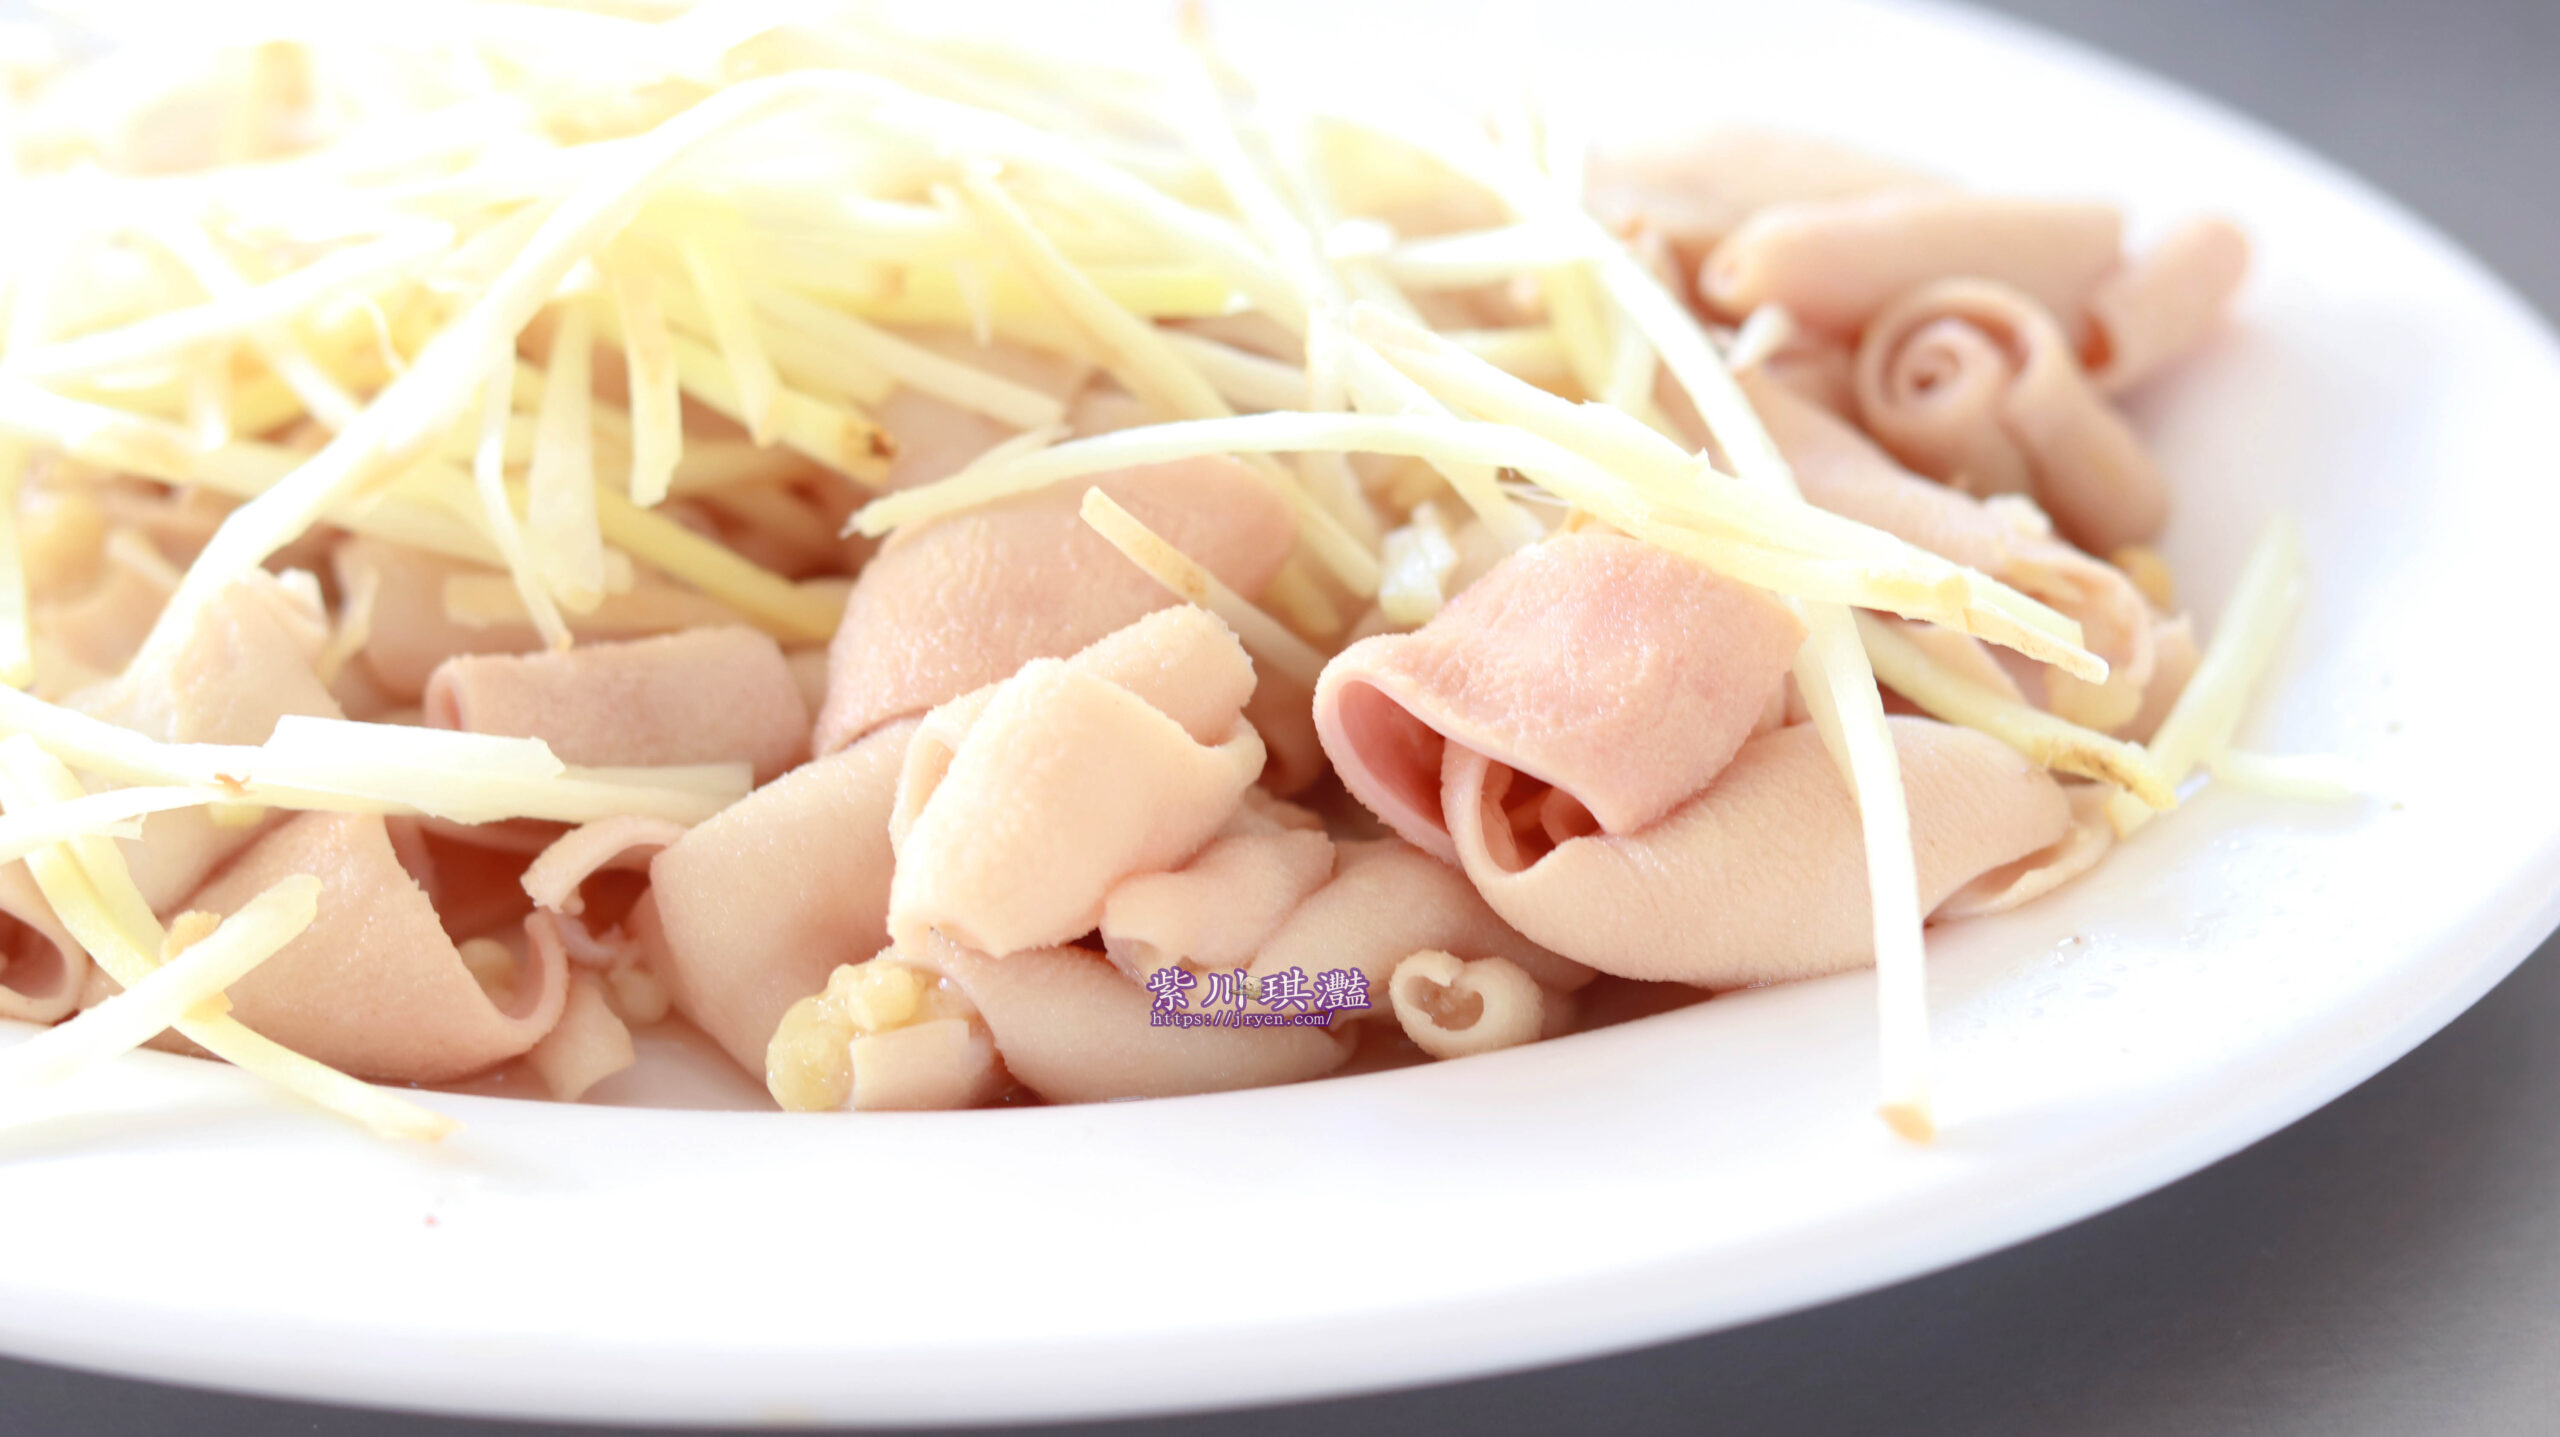 鹽埕銅板美食鴨肉本大片的鴨肉加上肉燥，是鹽埕在地人狂推的傳統味道